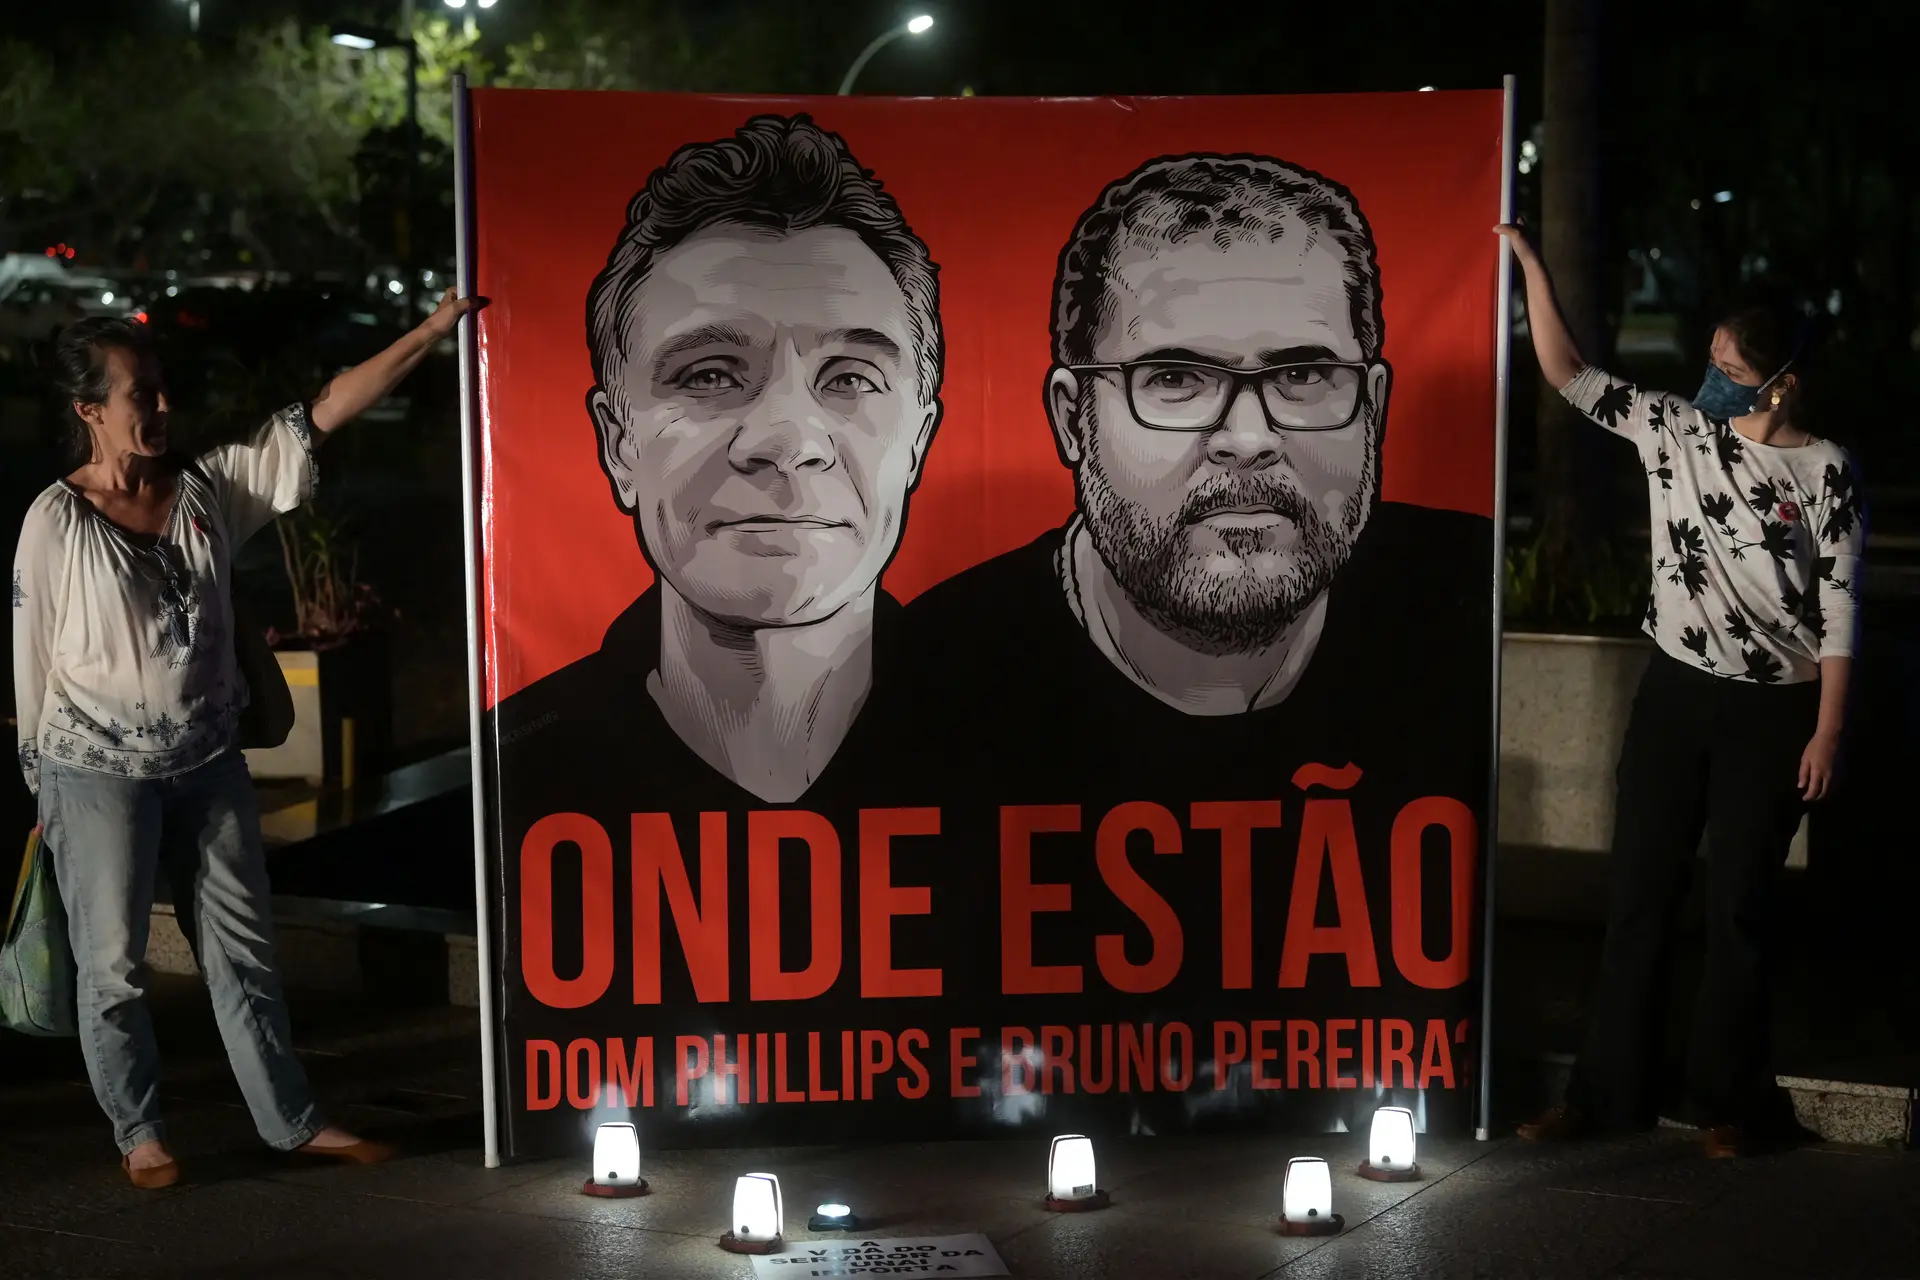 O ativista Bruno Pereira e o jornalista Dom Phillips desapareceram há seis dias numa zona remota da Amazónia, enquanto faziam pesquisa sobre tribos isoladas